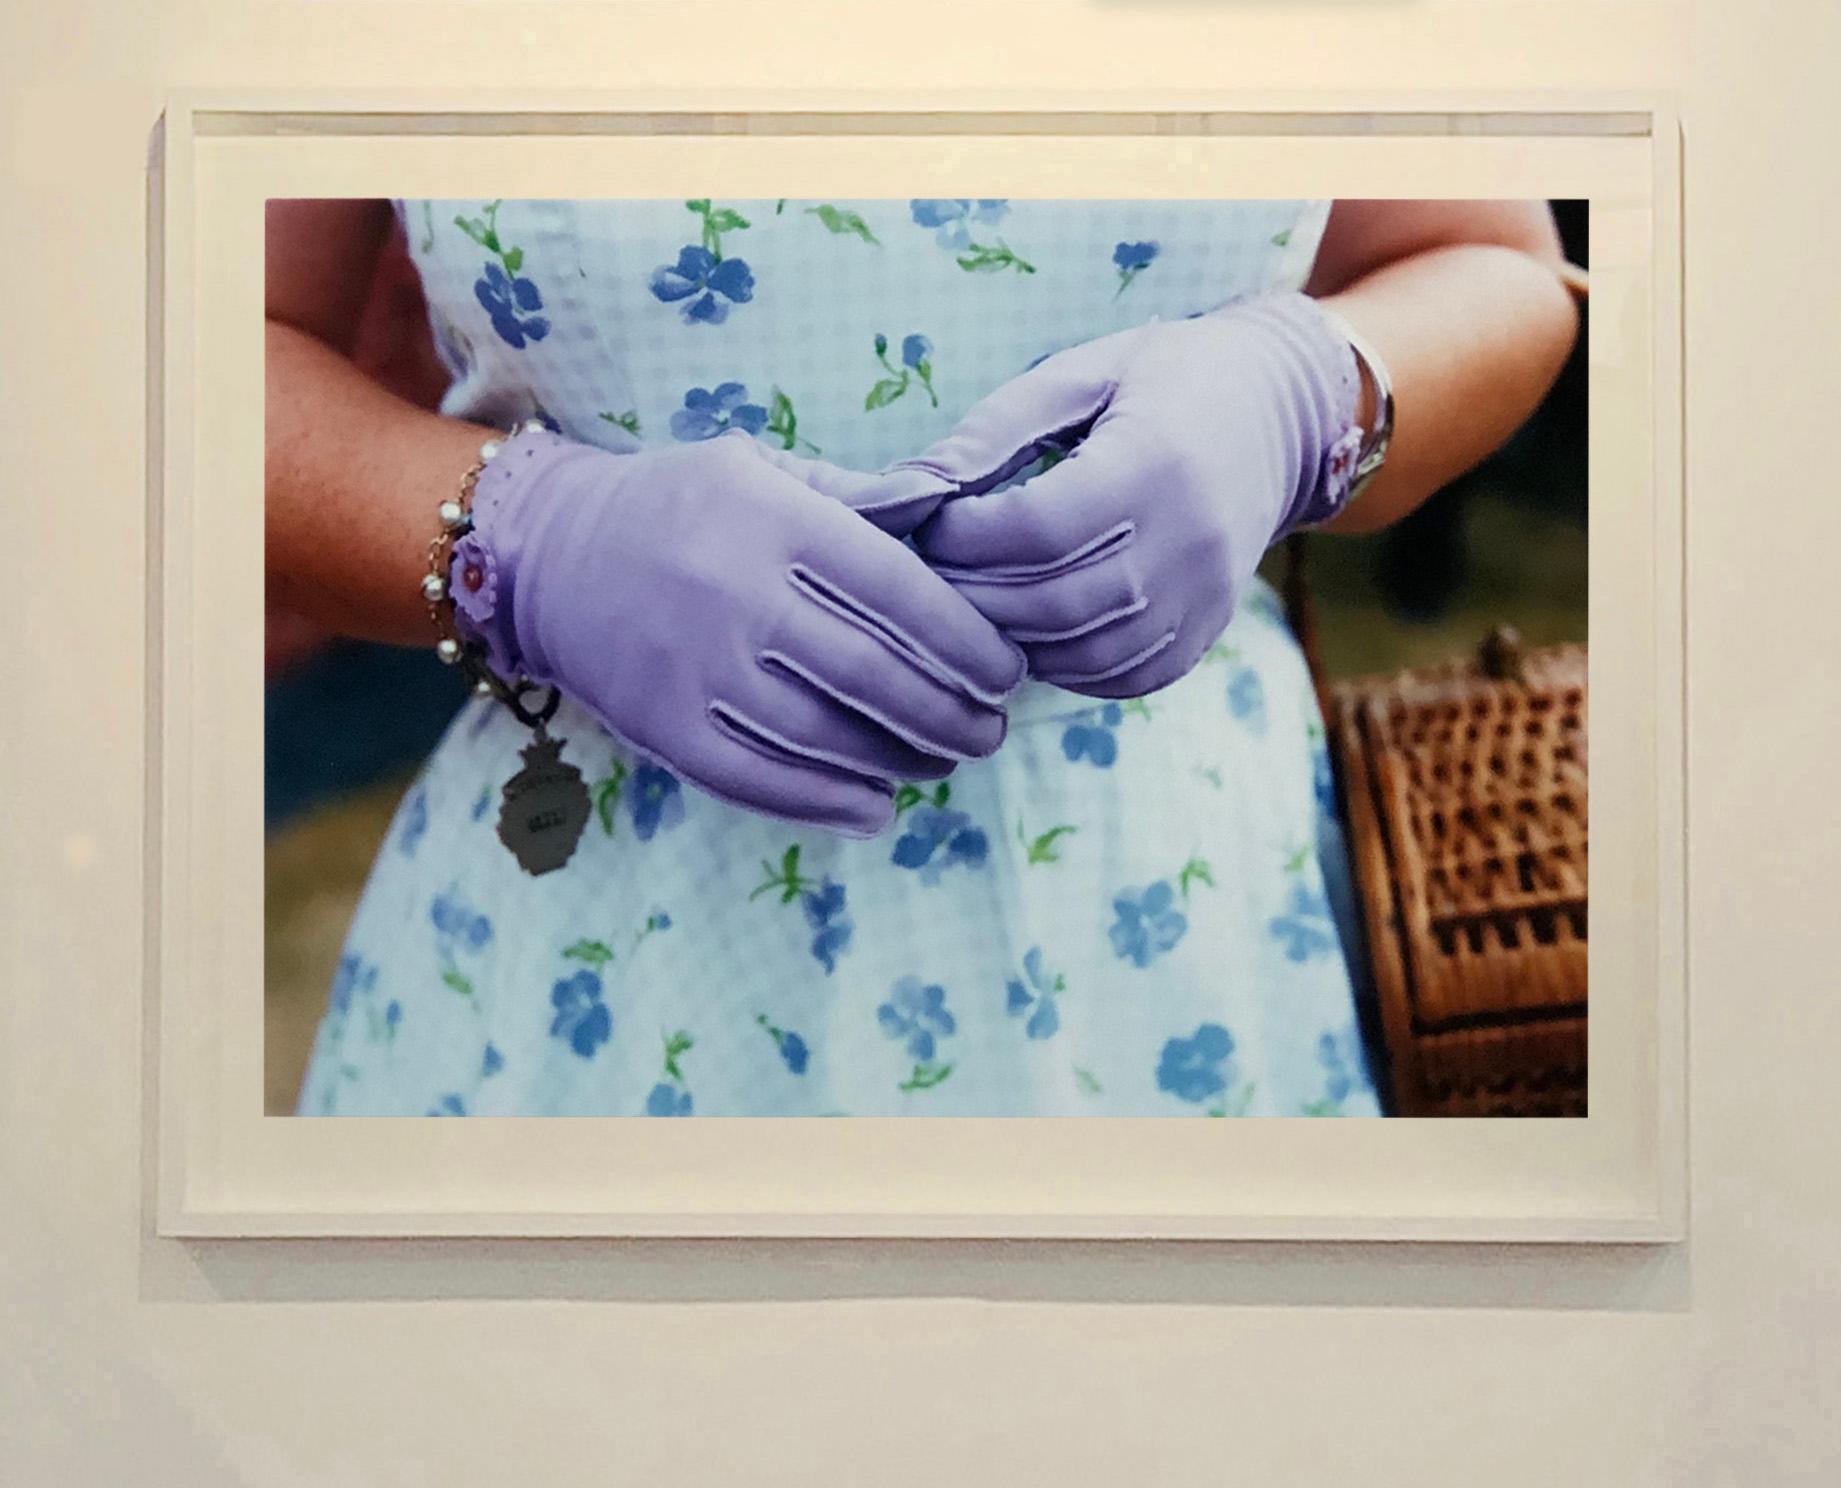 Fliederfarbene Handschuhe, Goodwood, Chichester - Feminine Mode, Farbfotografie (Zeitgenössisch), Photograph, von Richard Heeps